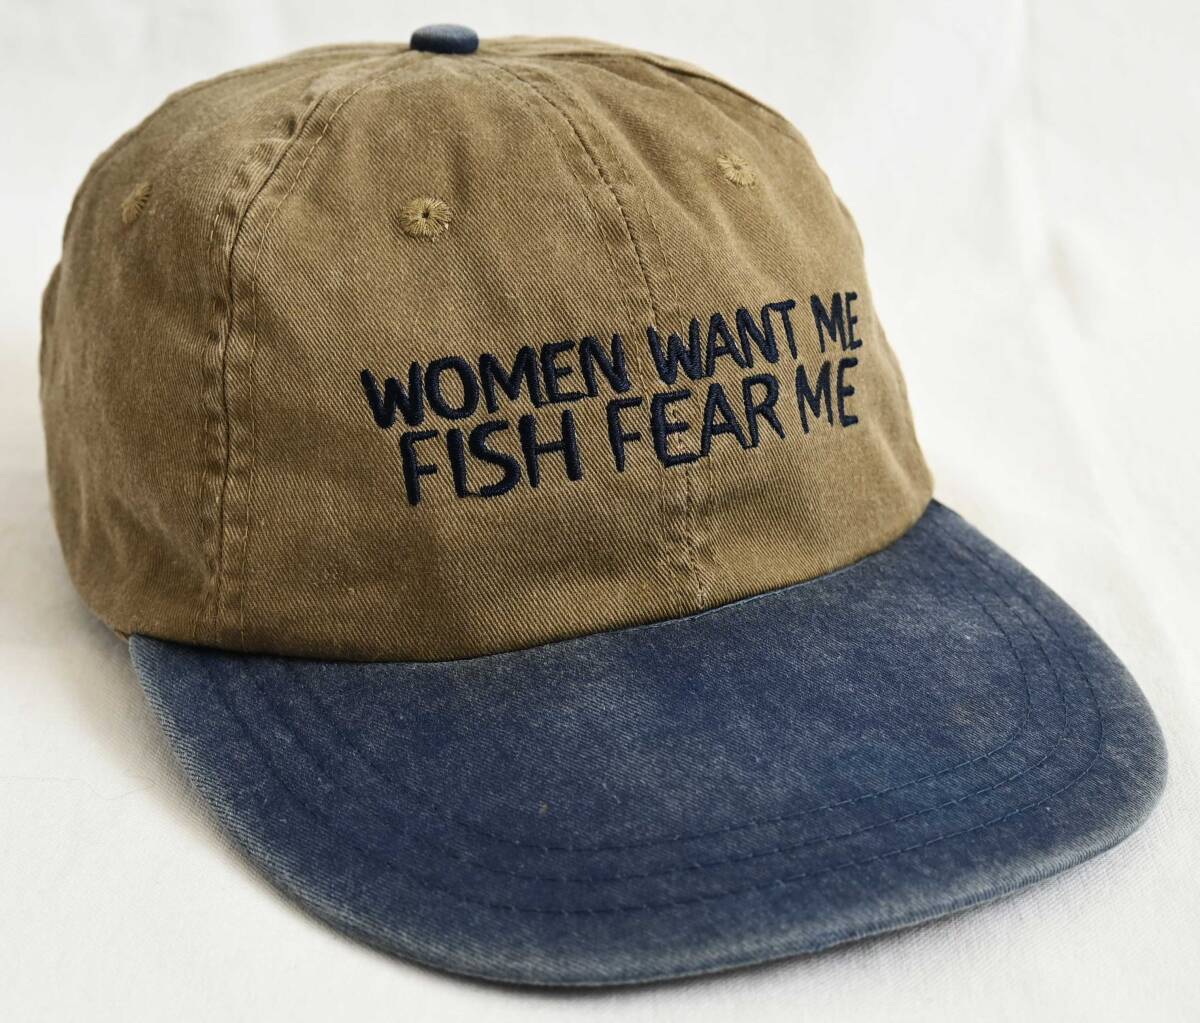  即決【90'sヴィンテージ/GO FISH】Women Want Me Fish Fear Me/2トーン キャップ/カーキ×ネイビー/フィッシング/ピグメント /om-242-10-3_画像1